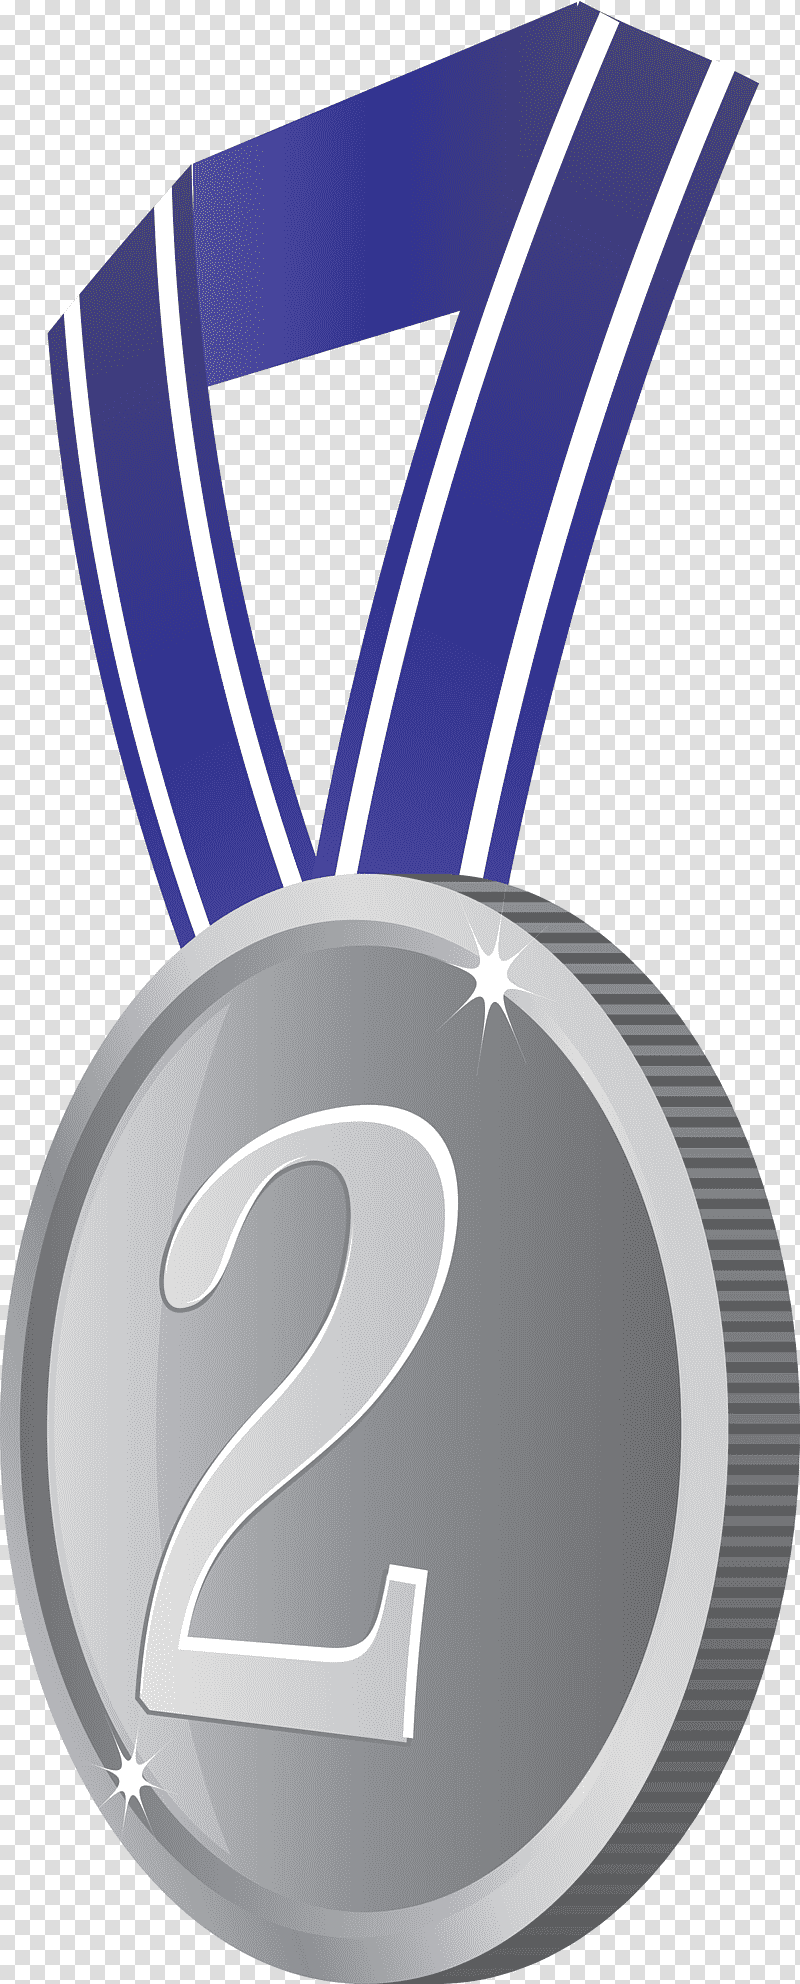 Silver Badge Award Badge, Medal, Gold Medal, Text, Logo, Bronze Medal transparent background PNG clipart